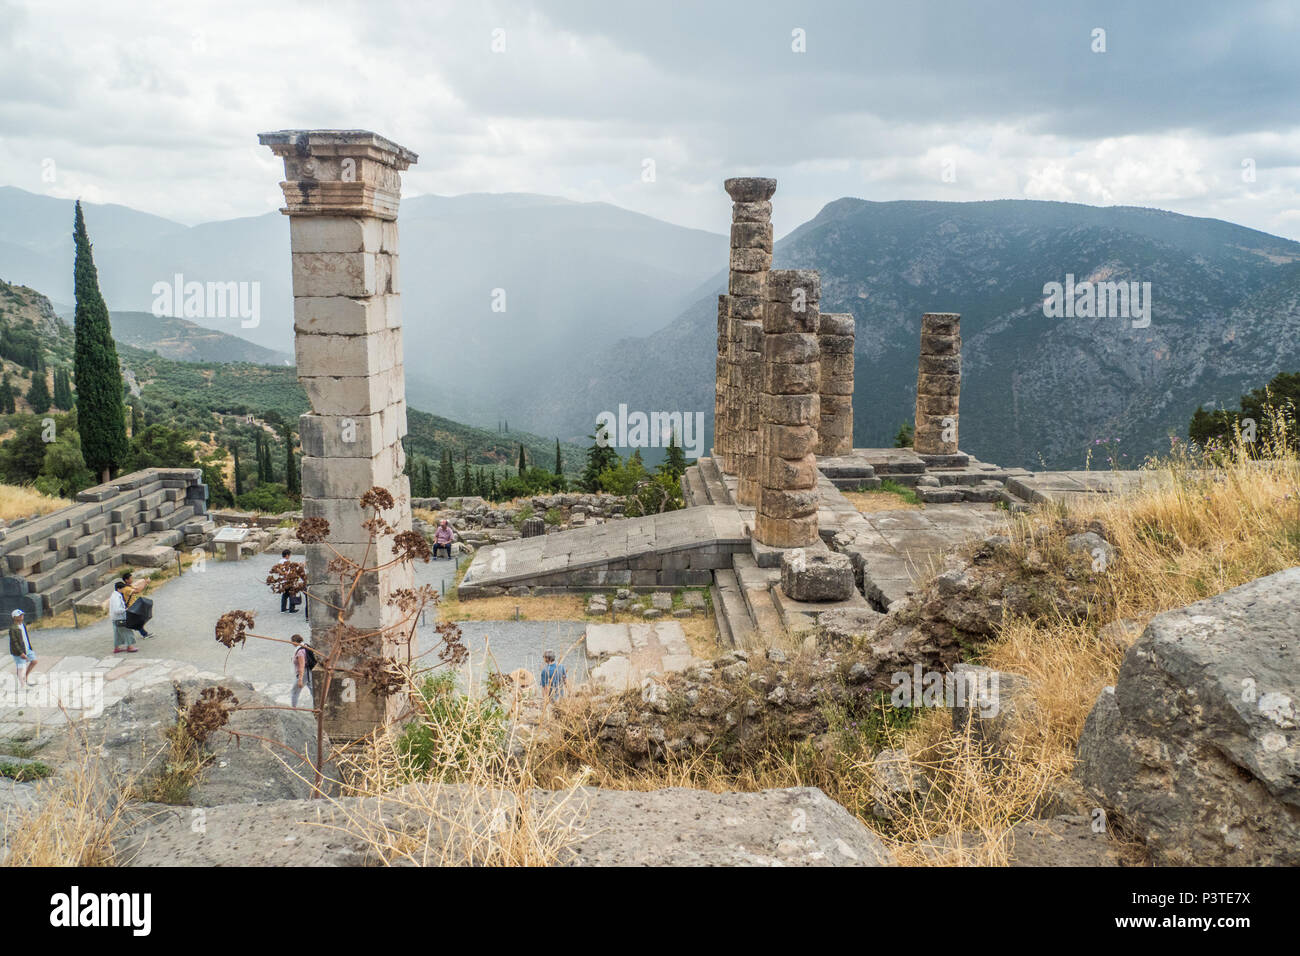 Delphi, un antico abitato sul monte Parnaso in Grecia, una volta casa del leggendario Oracle. Le colonne sono parte del IV secolo A.C. Tempio di Apollo Foto Stock